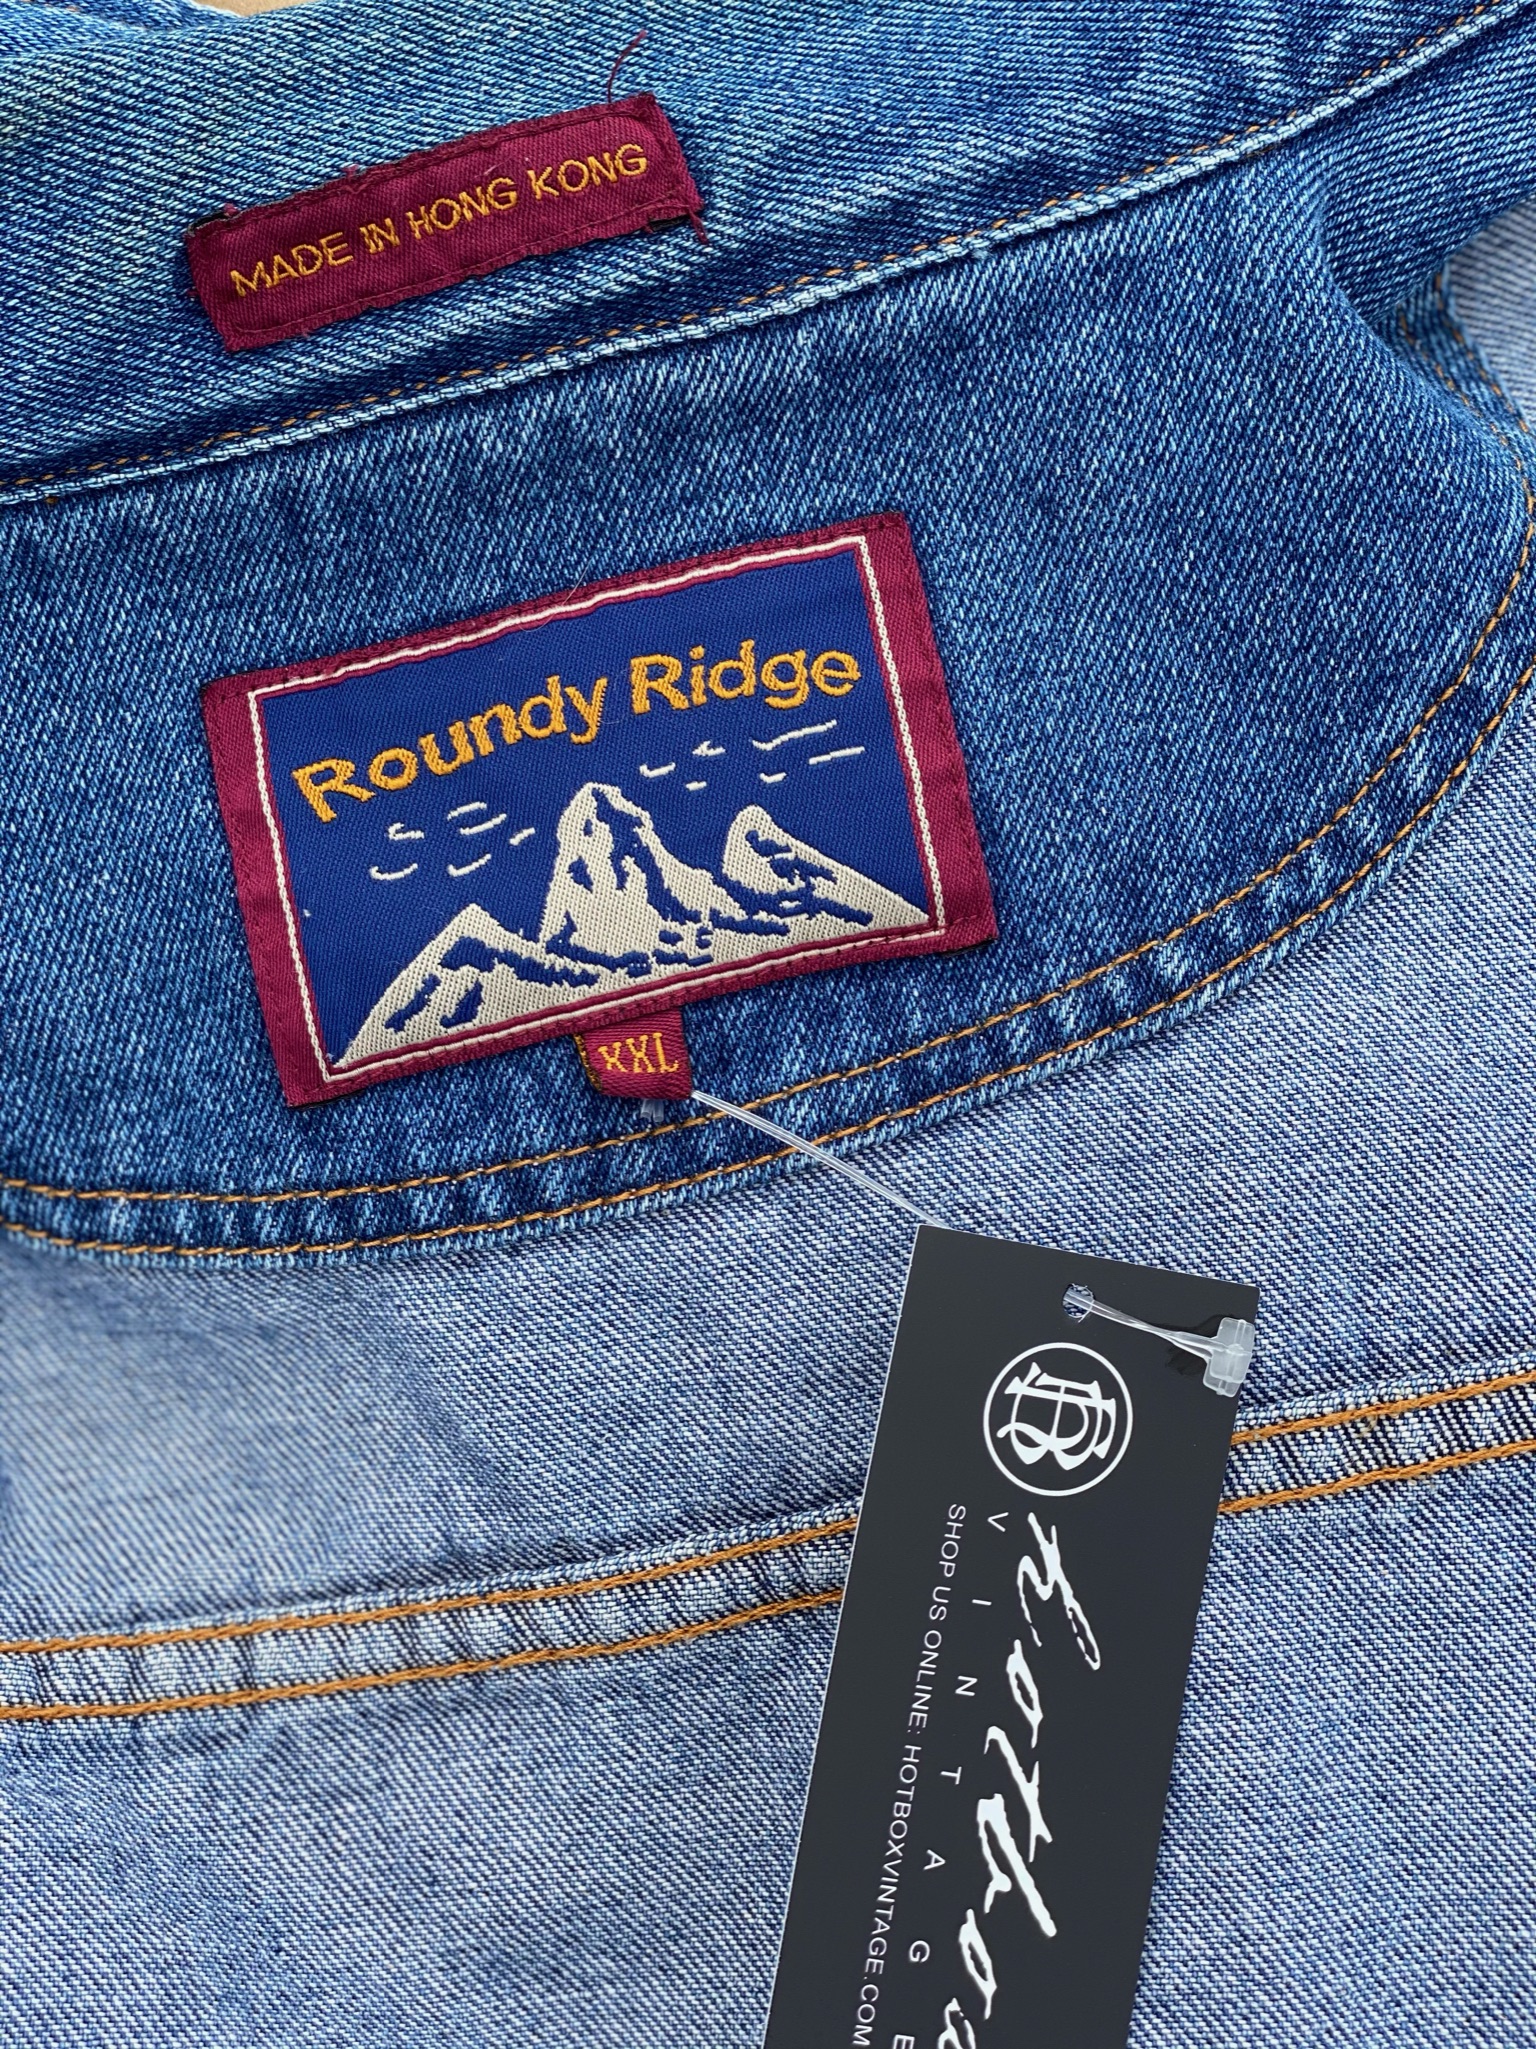 Vintage Roundy Ridge Denim Jacket - L/2X